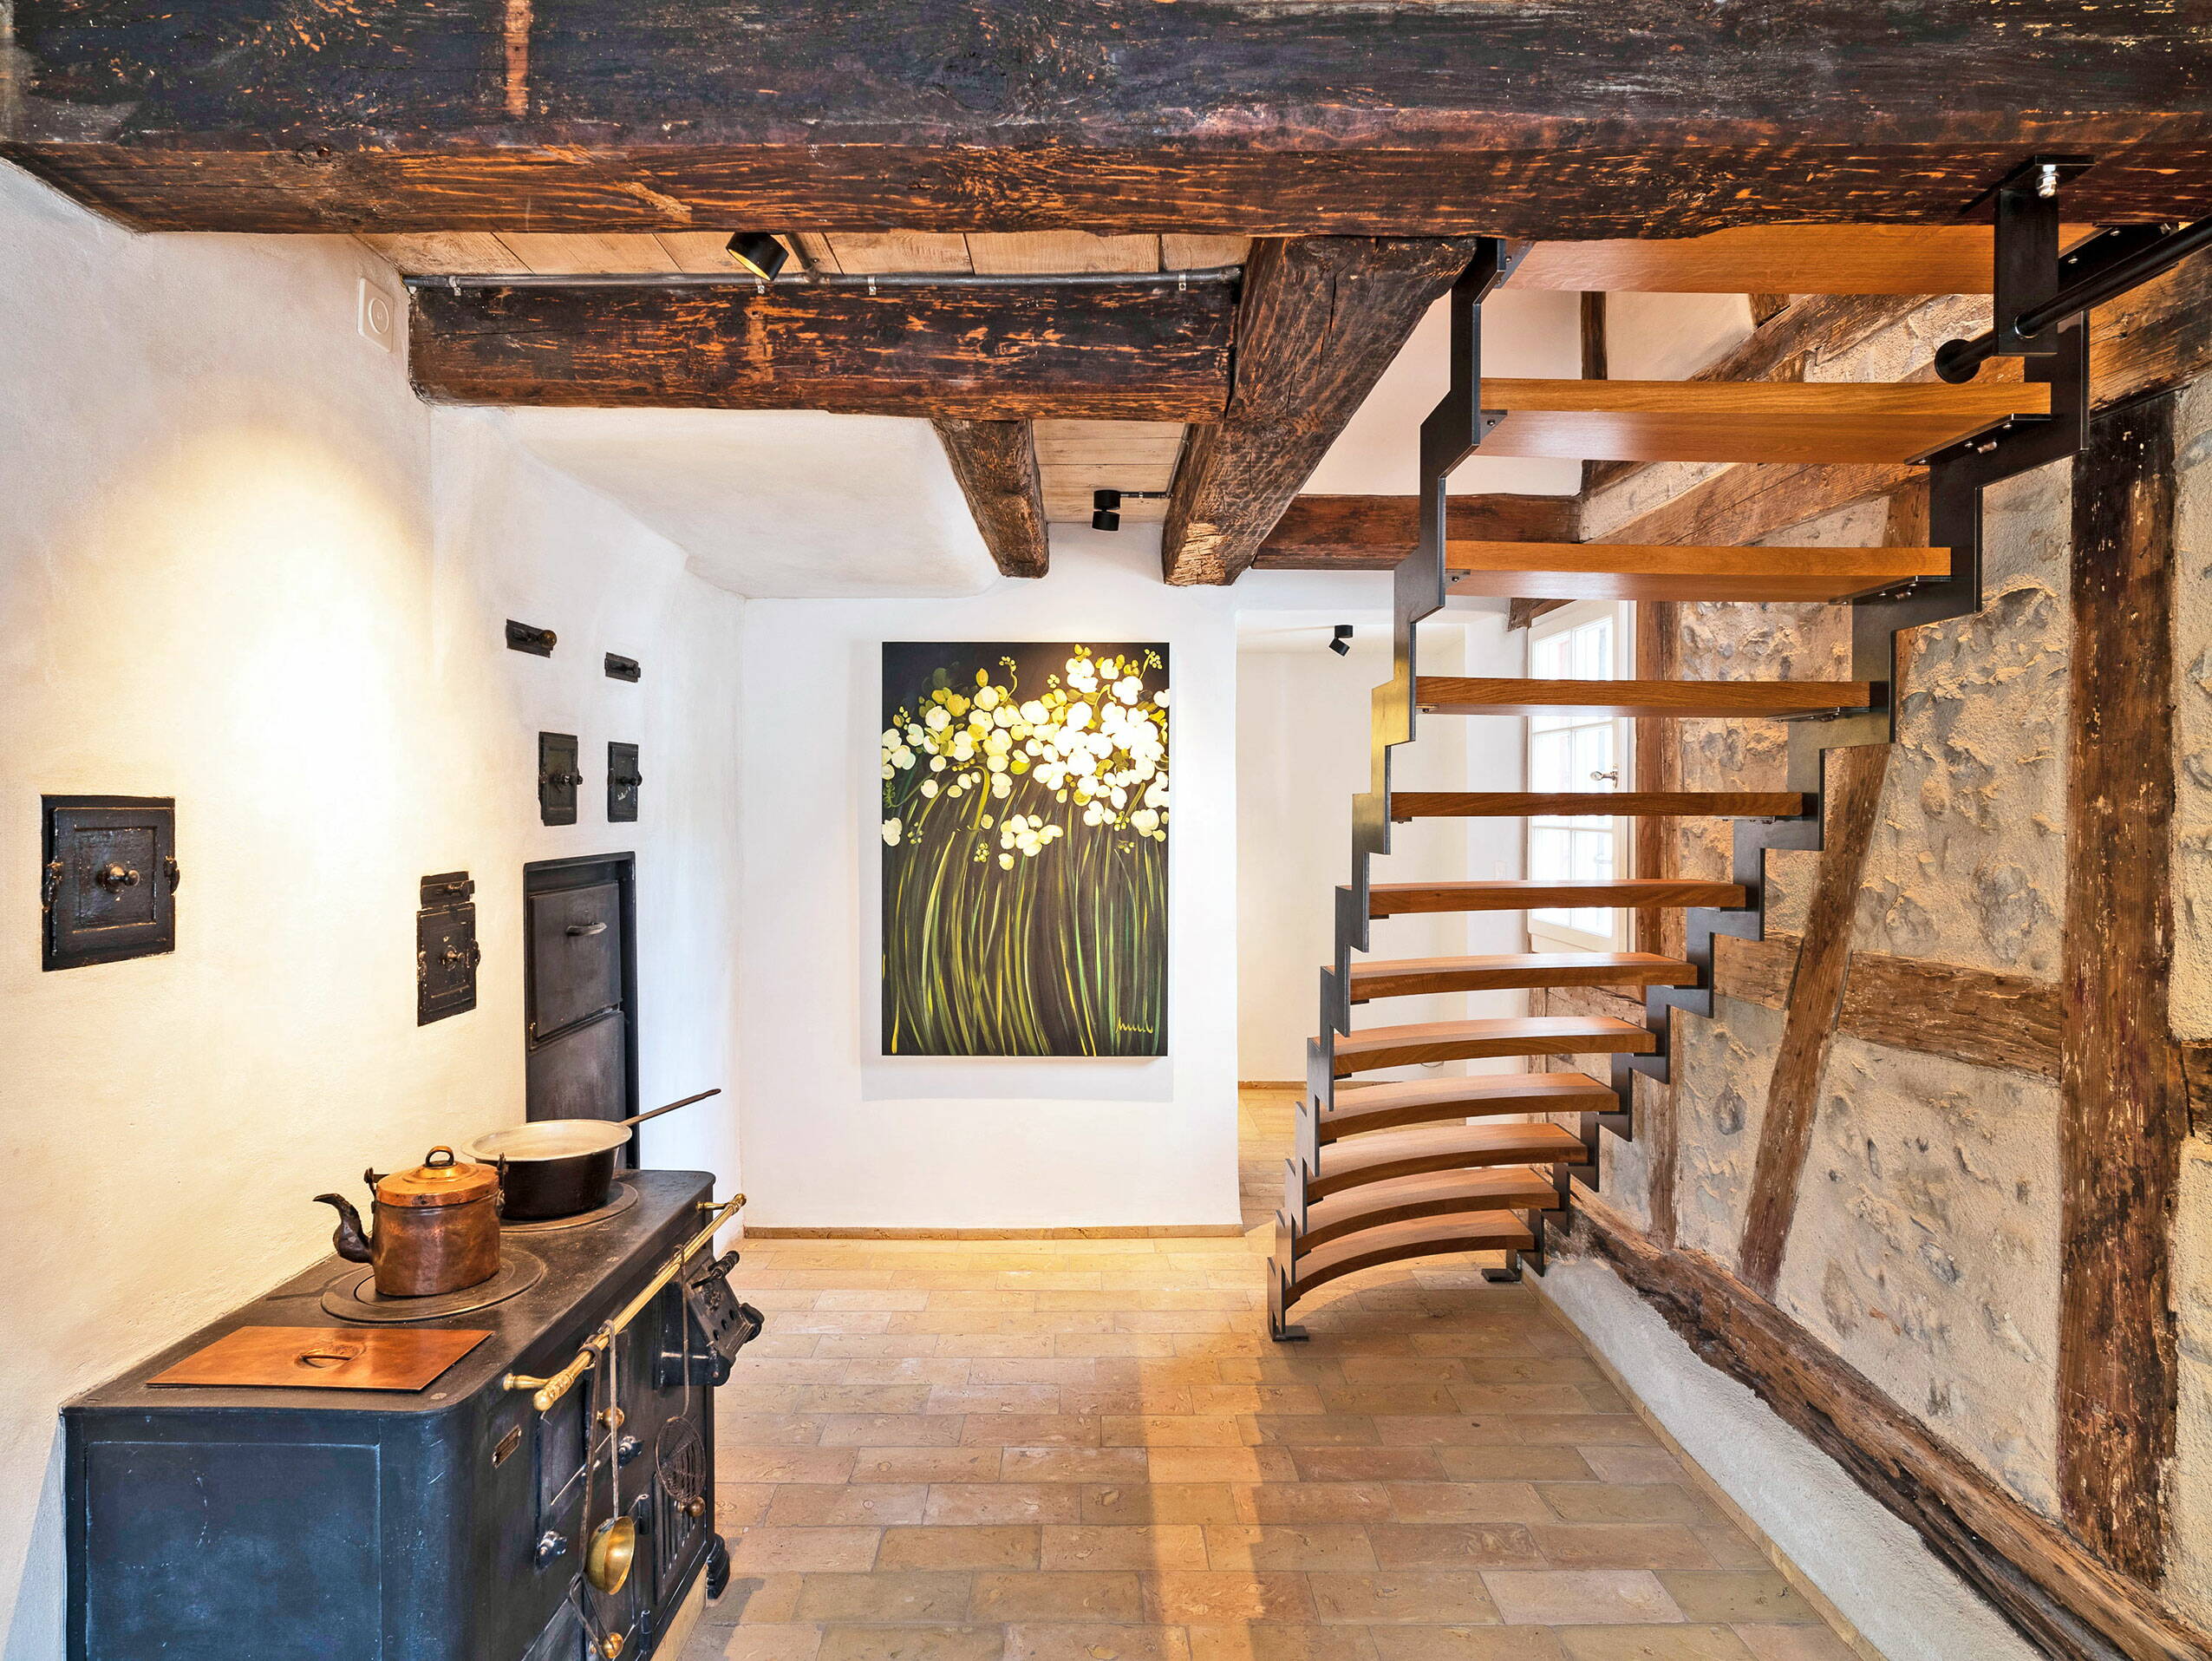 Zoom: Sicht in einen Raum mit alten Holzbalken an der Decke und einer Treppe aus Holz und Metall in den zweiten Stock.